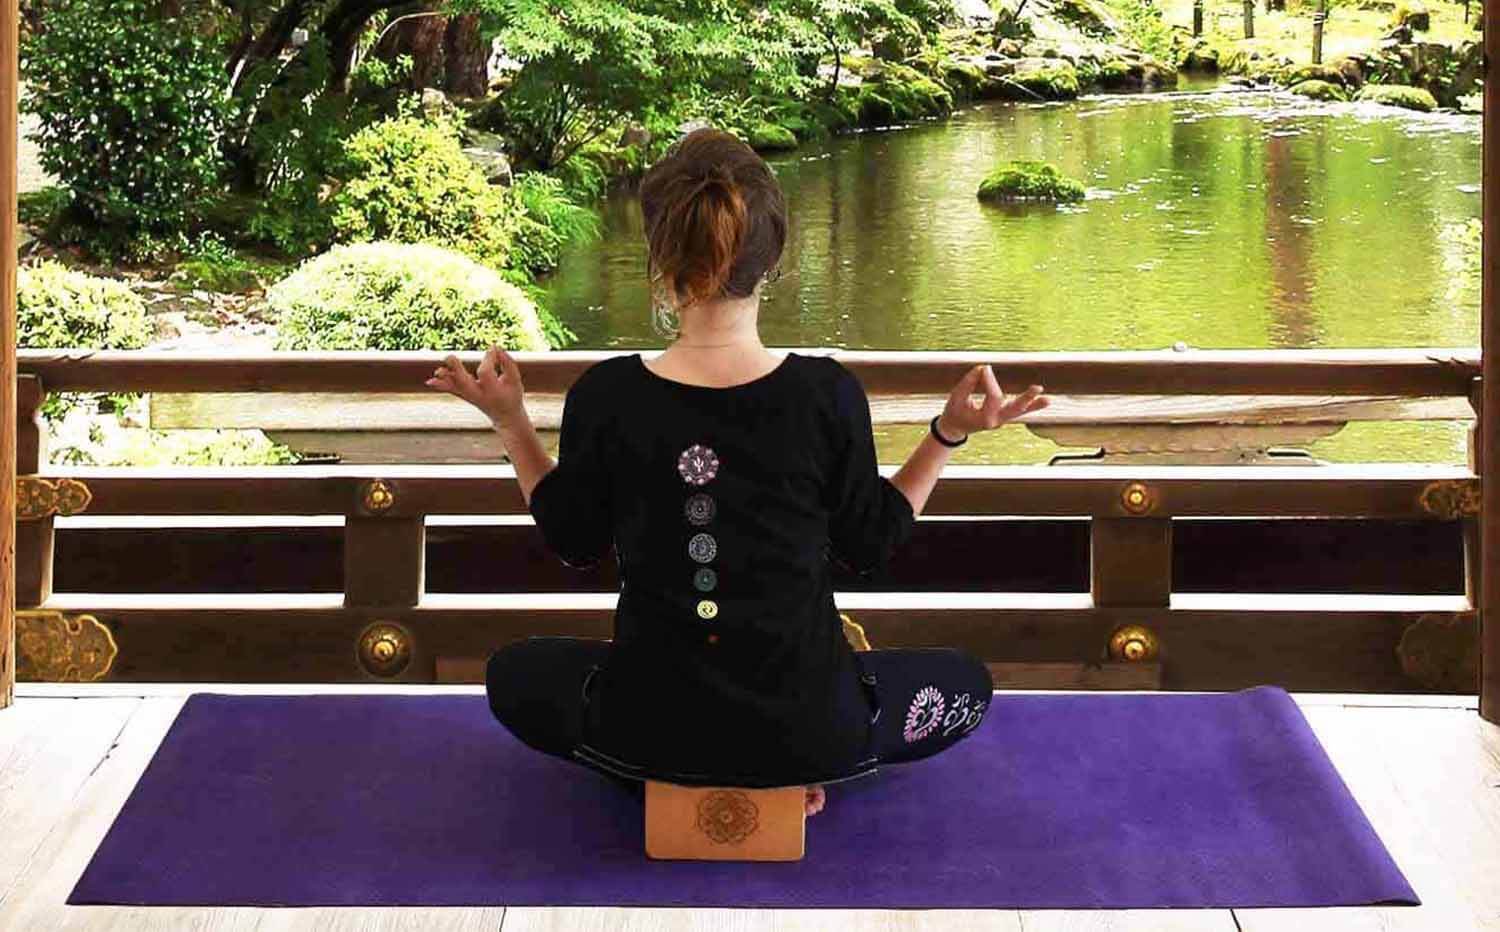 Magasin yoga Le havre - Yogini avec tee shirt yoga 7 chakras brodés qui médite dans un temple bouddhiste sur un tapis toile de jute - Achamana